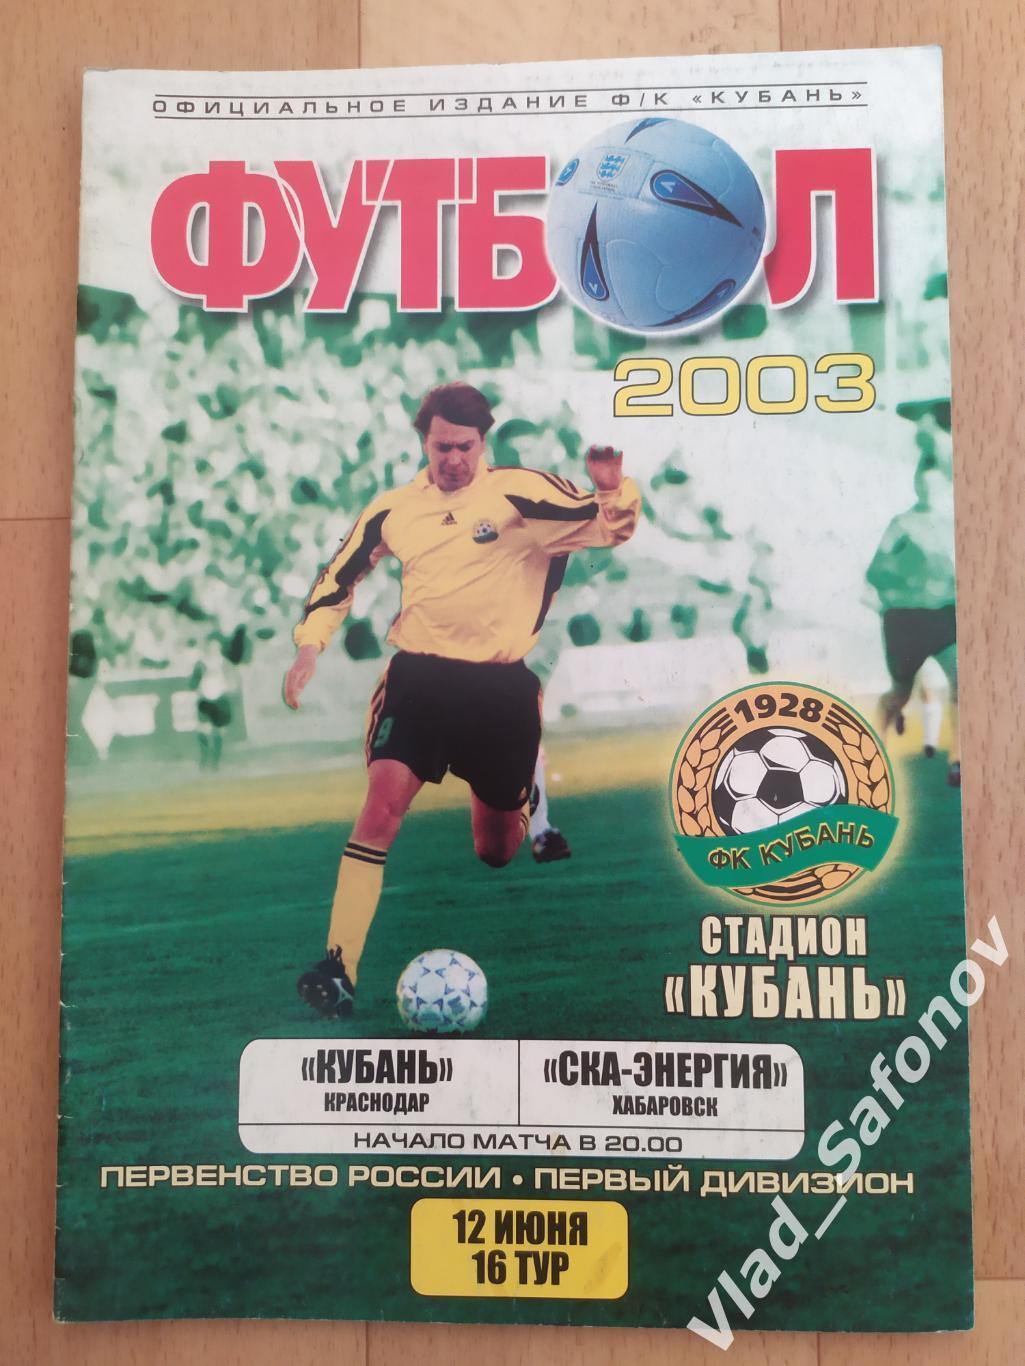 Кубань(Краснодар) - Ска(Хабаровск). 1 дивизион. 12/06/2003